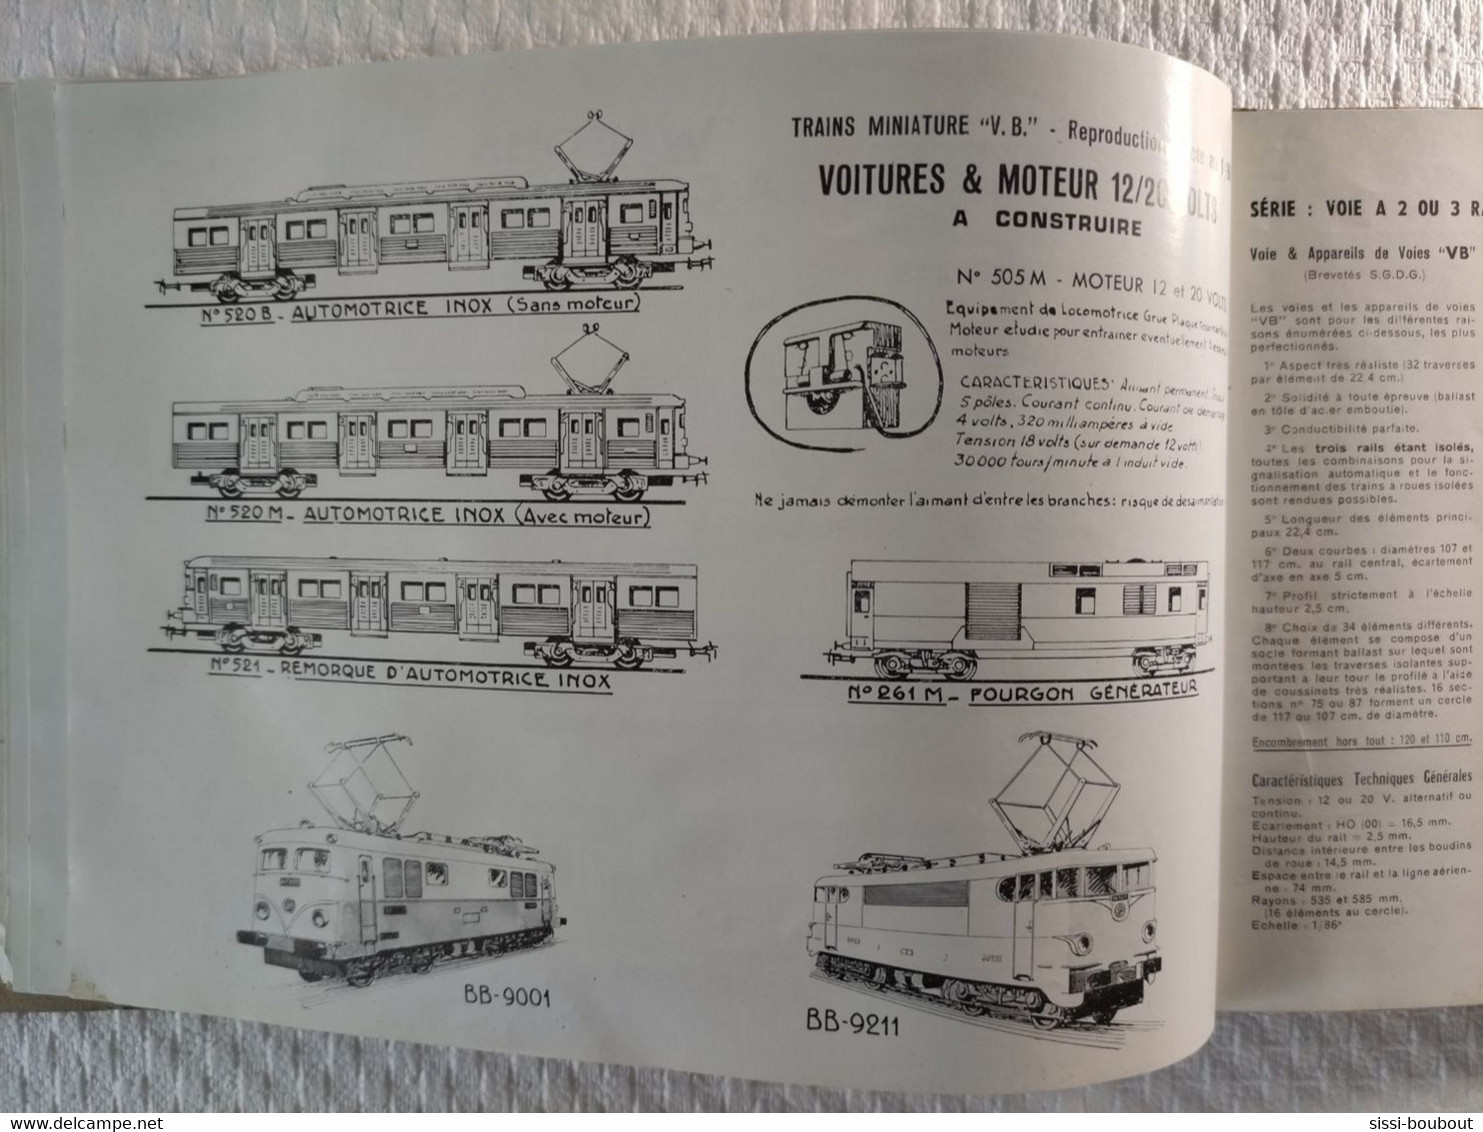 Catalogue de 1960 - "Chemins de Fer Electriques Miniature - VB" -  ECARTEMENT HO - SNCF - Trains, locomotives etc...